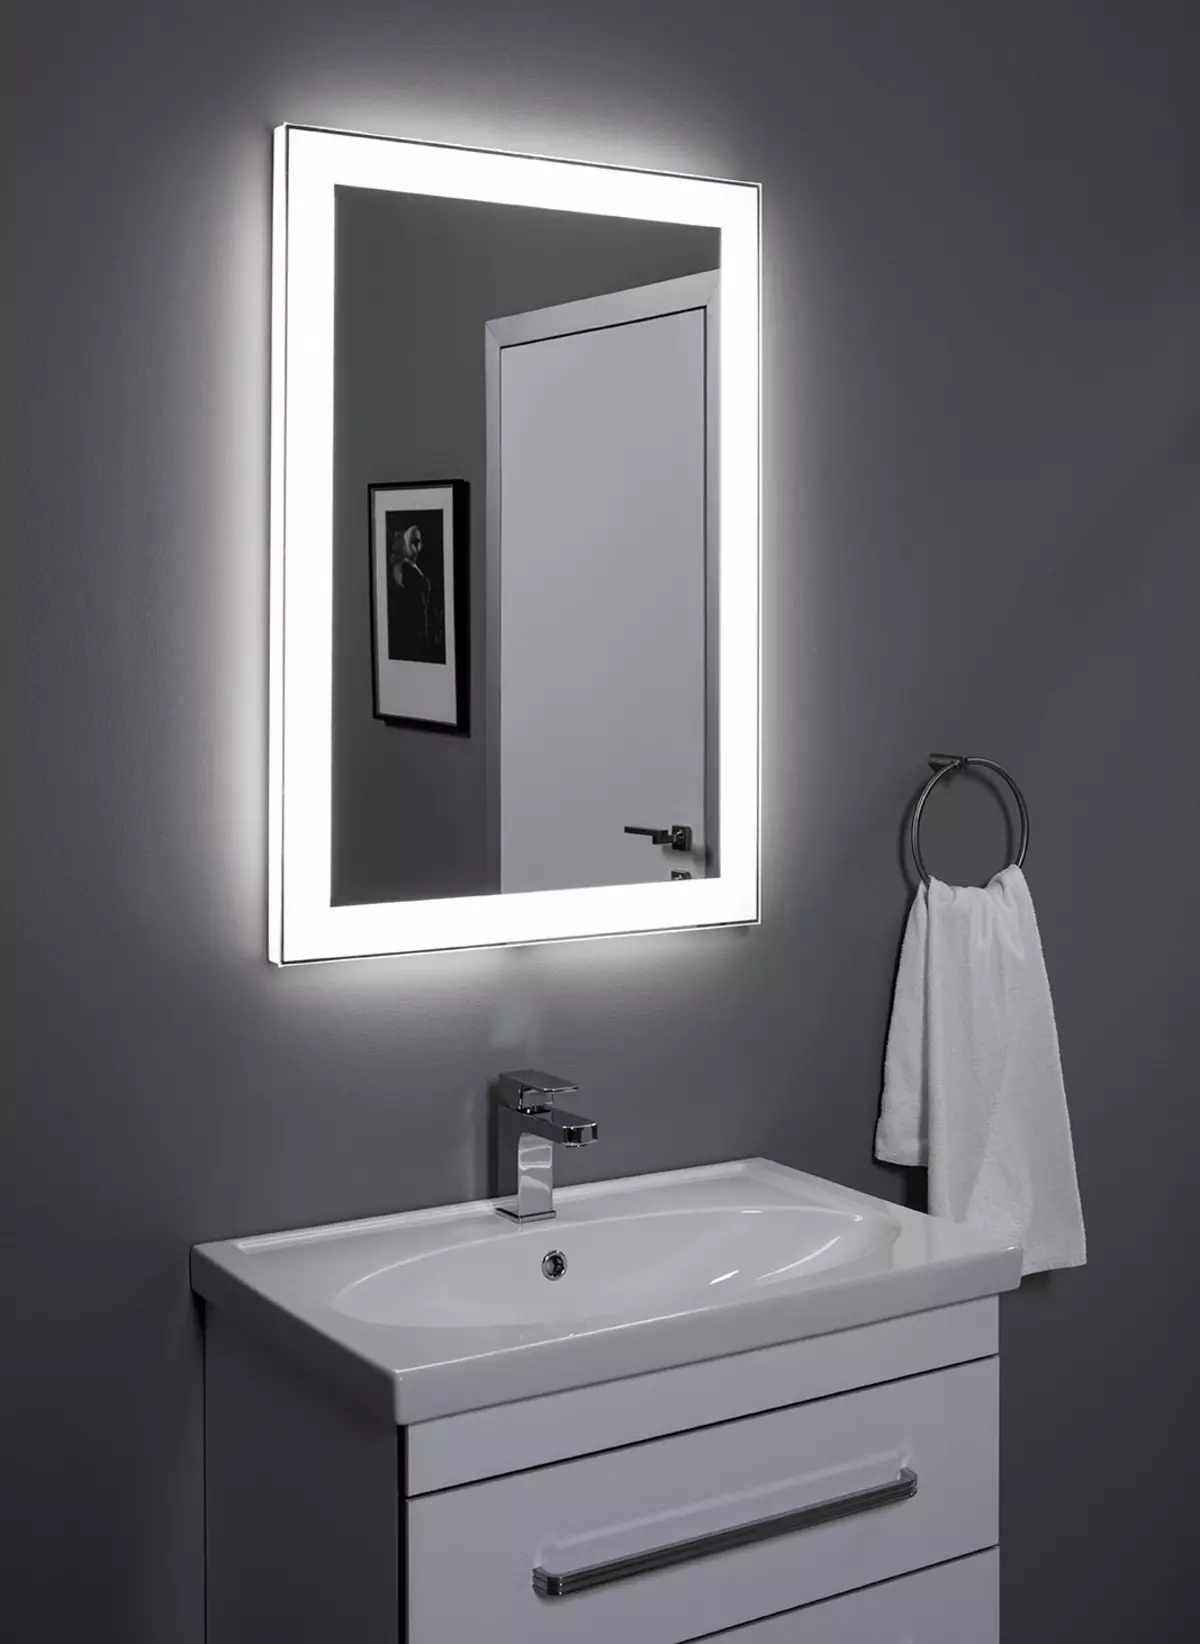 Escalfada mirall al bany: Com triar un mirall amb il·luminació, rellotge i anti-pla al bany? Característiques dels miralls de calefacció 10072_21